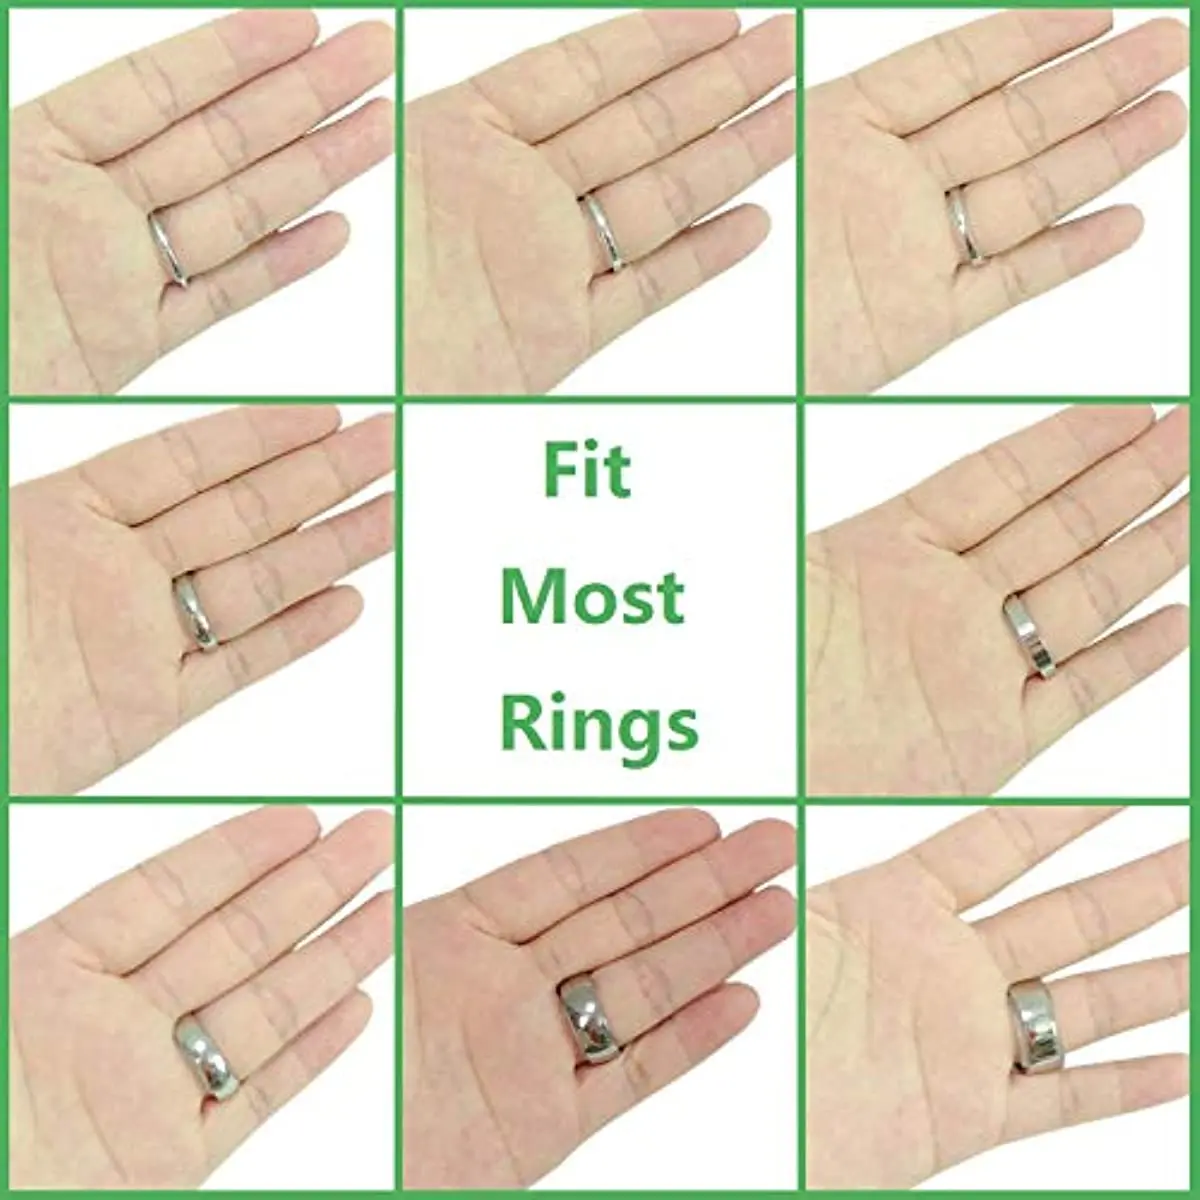 Регулятор размера кольца для свободных колец для любого кольца размера кольца